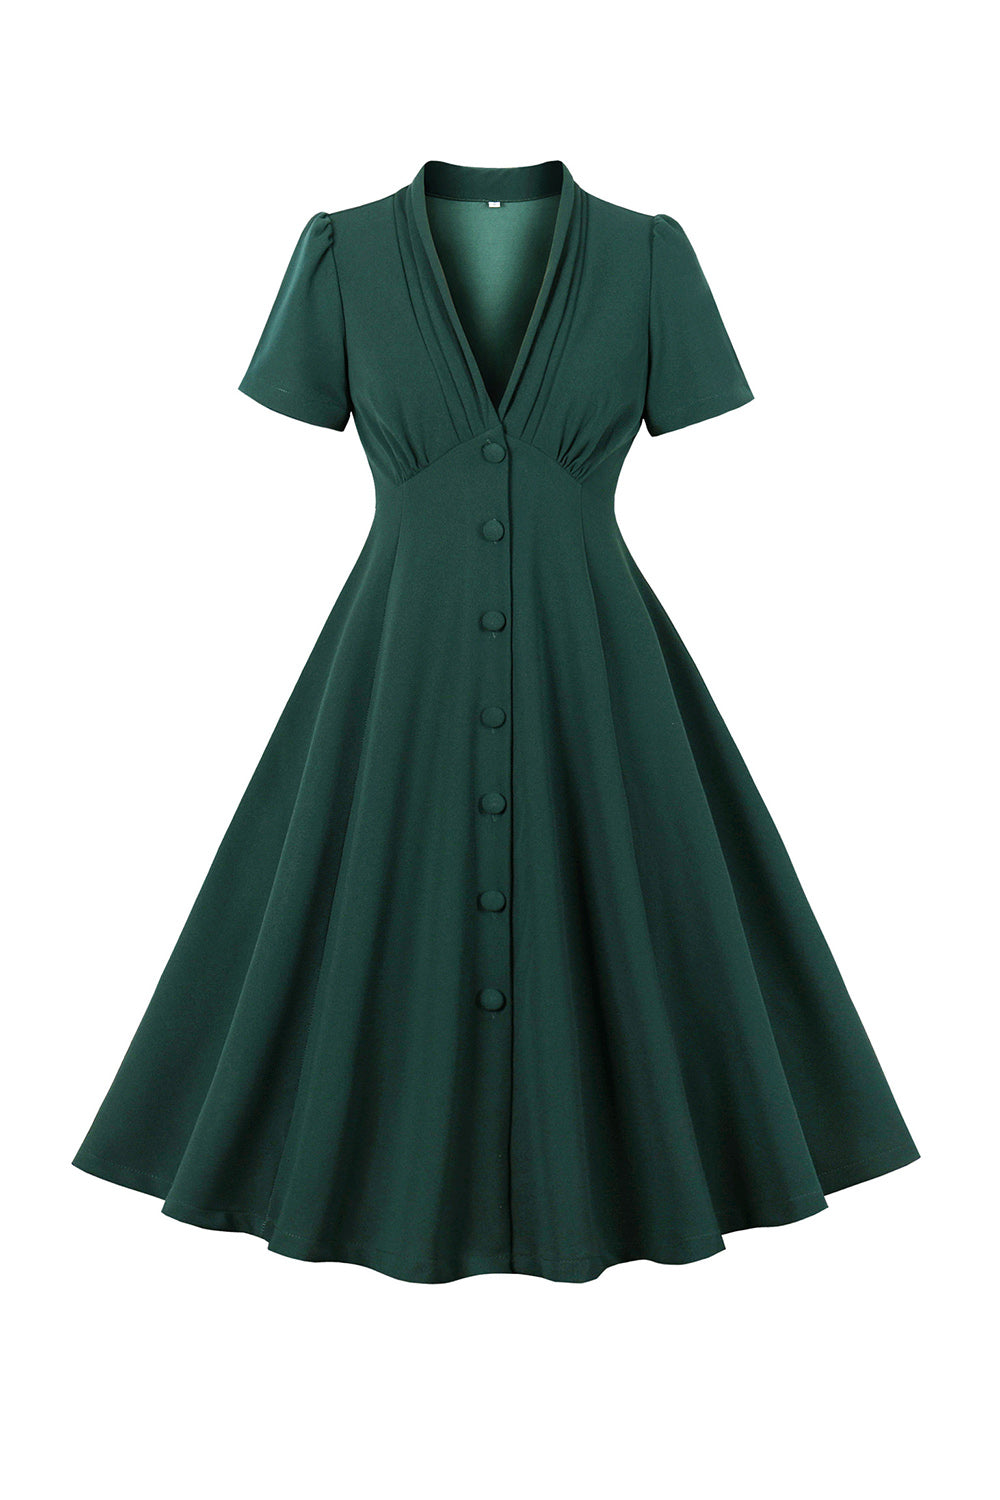 Zielona Sukienka Z Głębokim Dekoltem W Serek 1950s Z Krótkim Rękawem